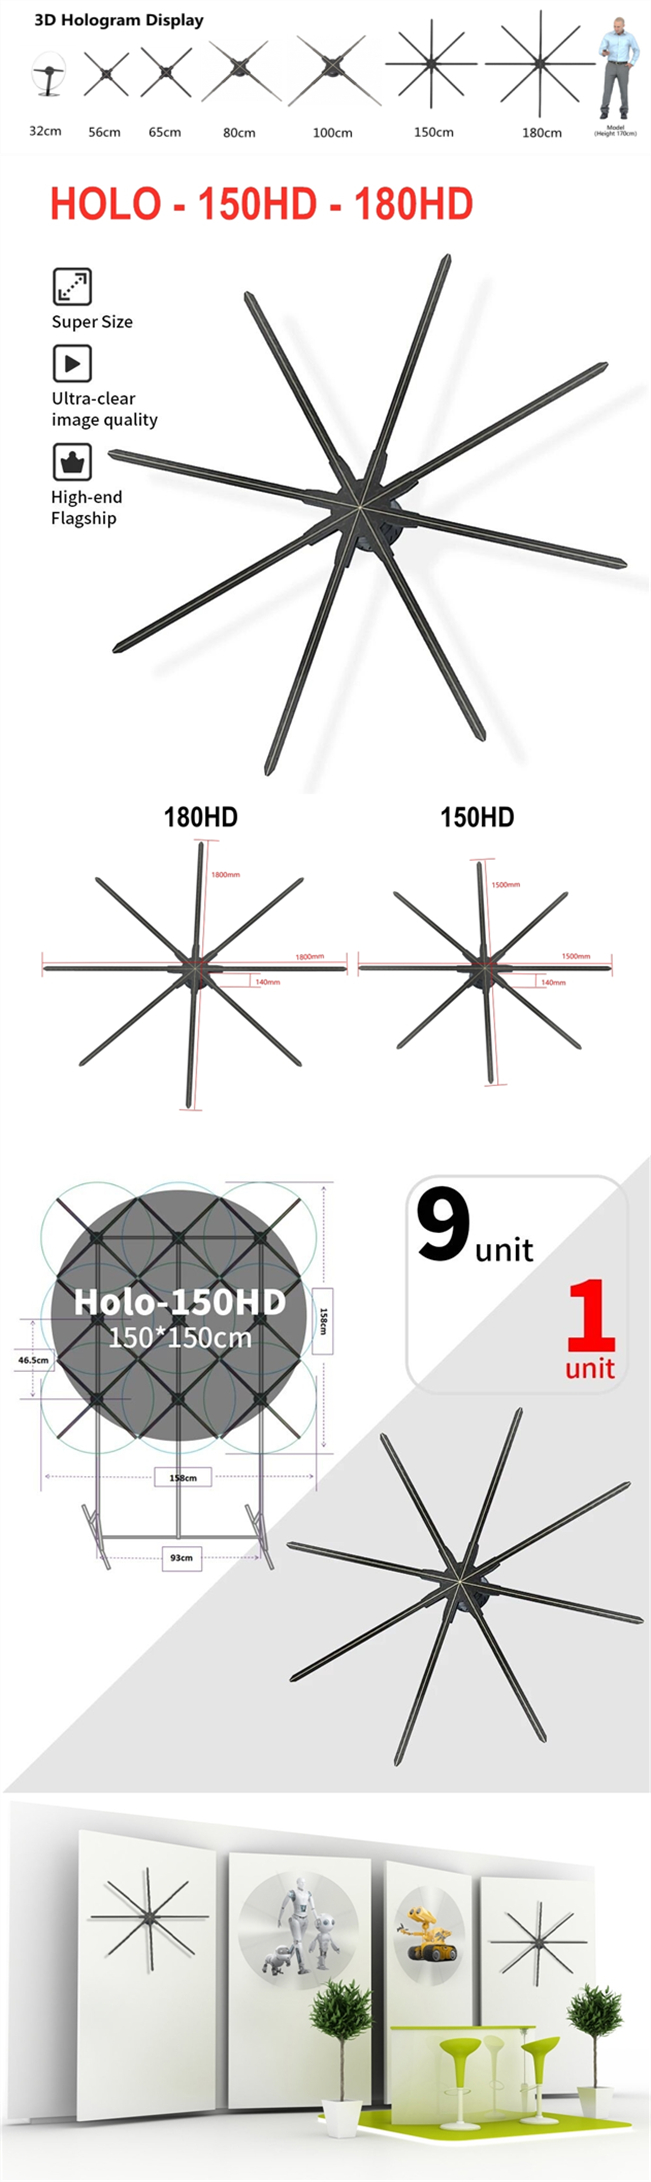 Holo - 150HD - 180HD_副本.jpg